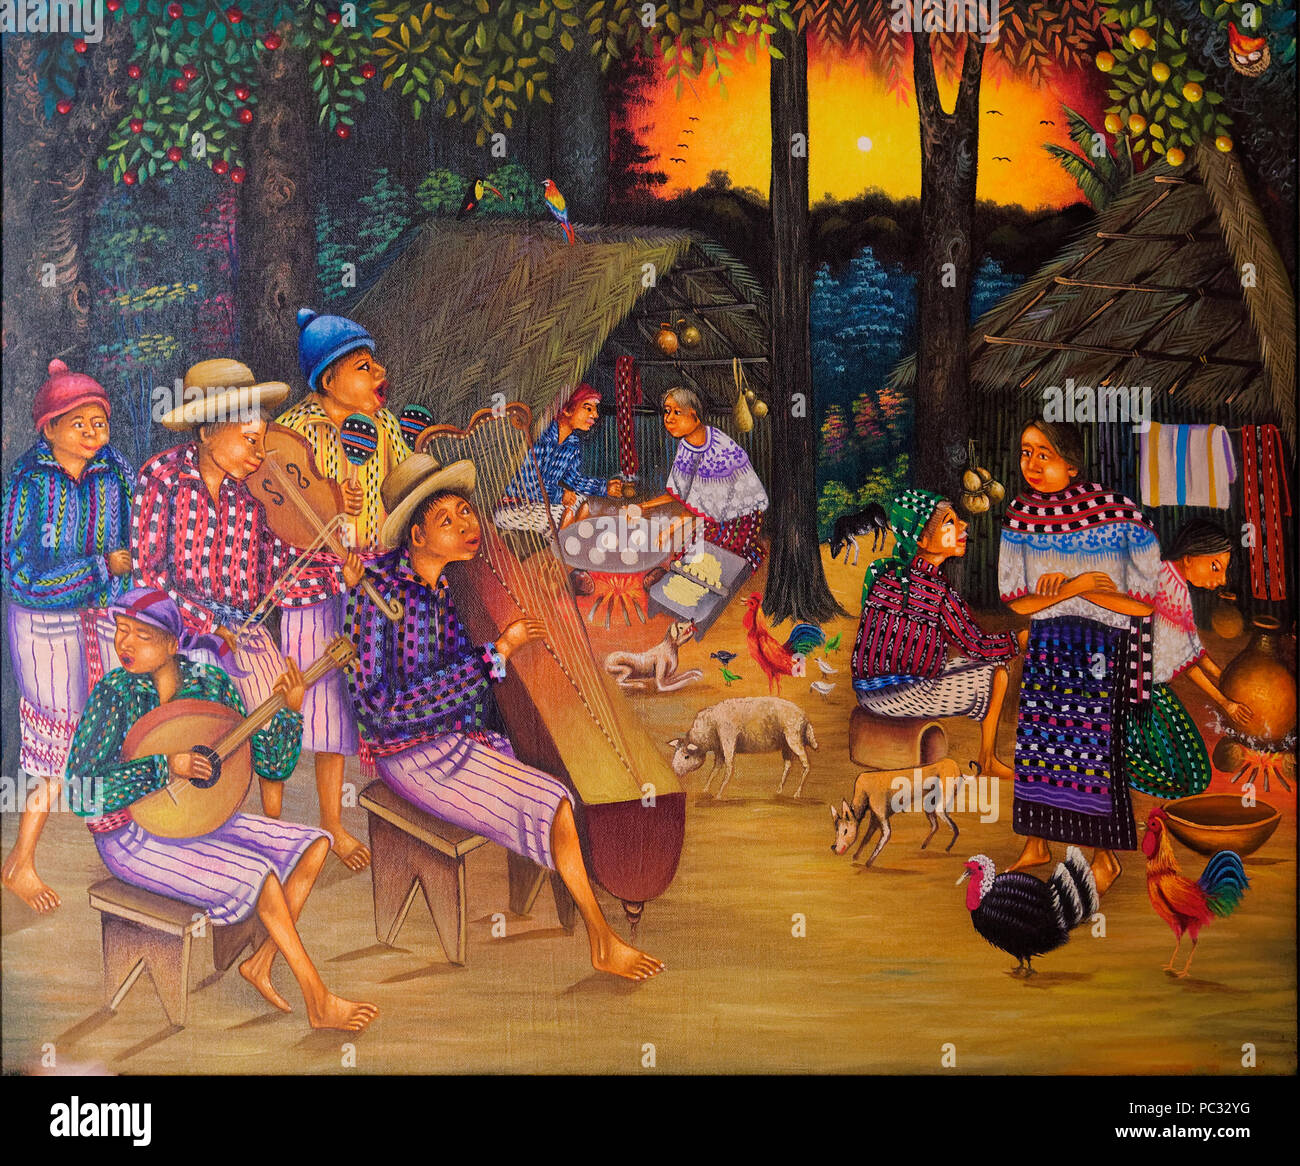 Peinture- d'art indigène, les indiens d'Amérique du Sud, Pérou Banque D'Images